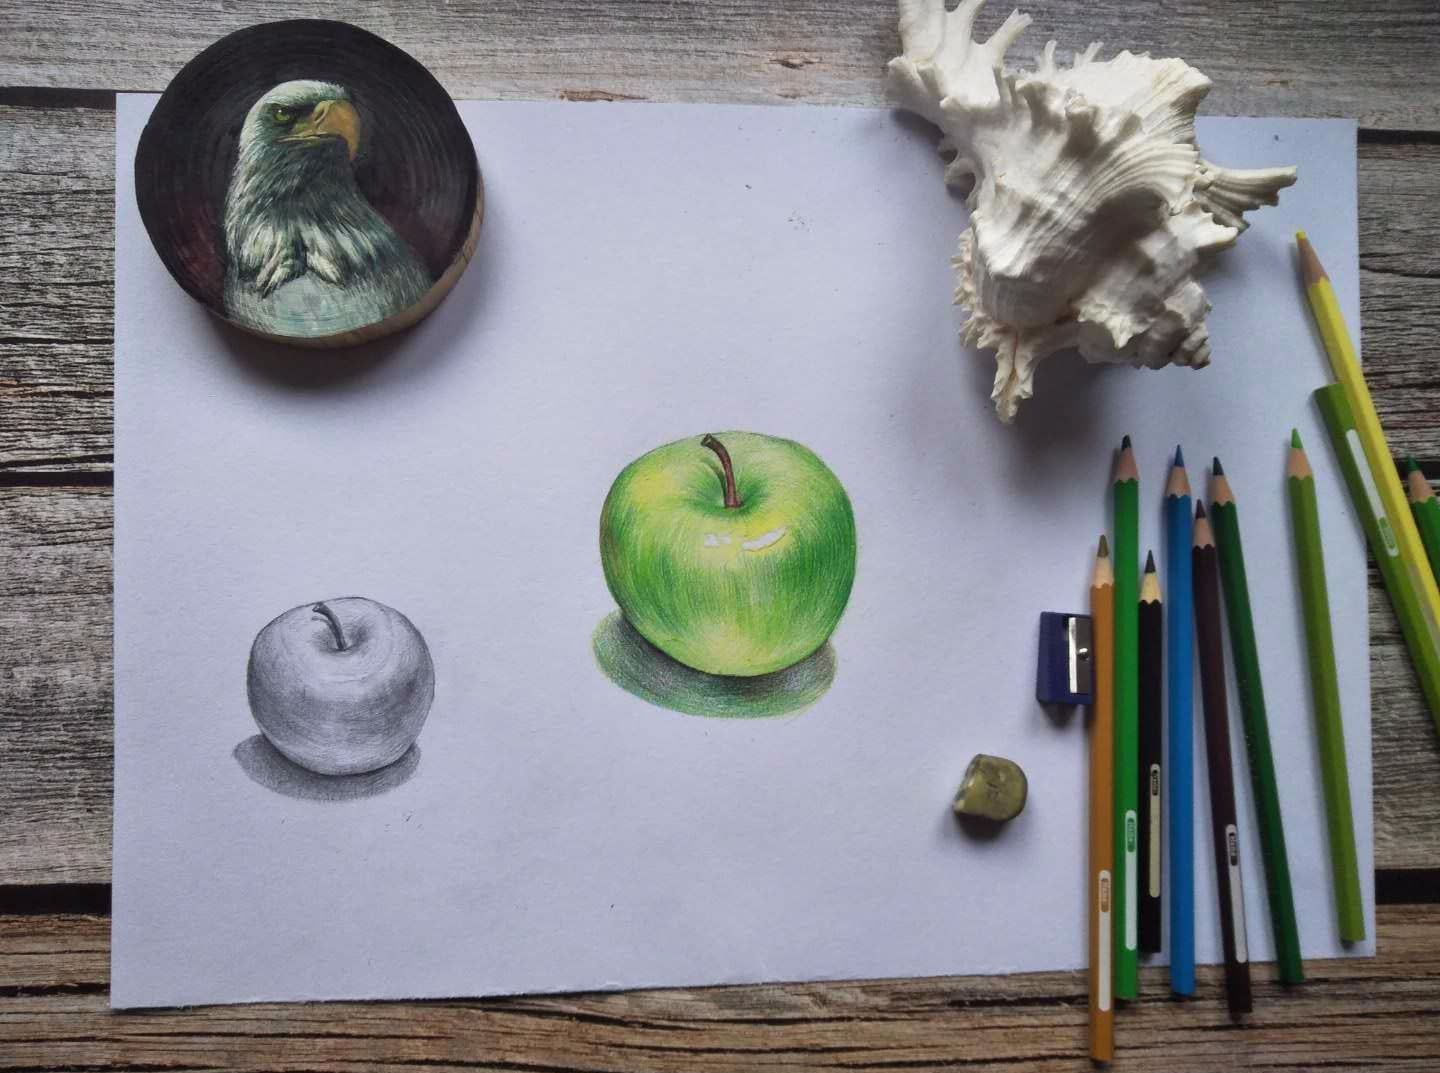 绘艺时光——超详尽的零基础彩铅手绘苹果教程
准备给零基础、初学绘画的同学做几期专业的教程
只要能坚持下来就能画出美美的画儿